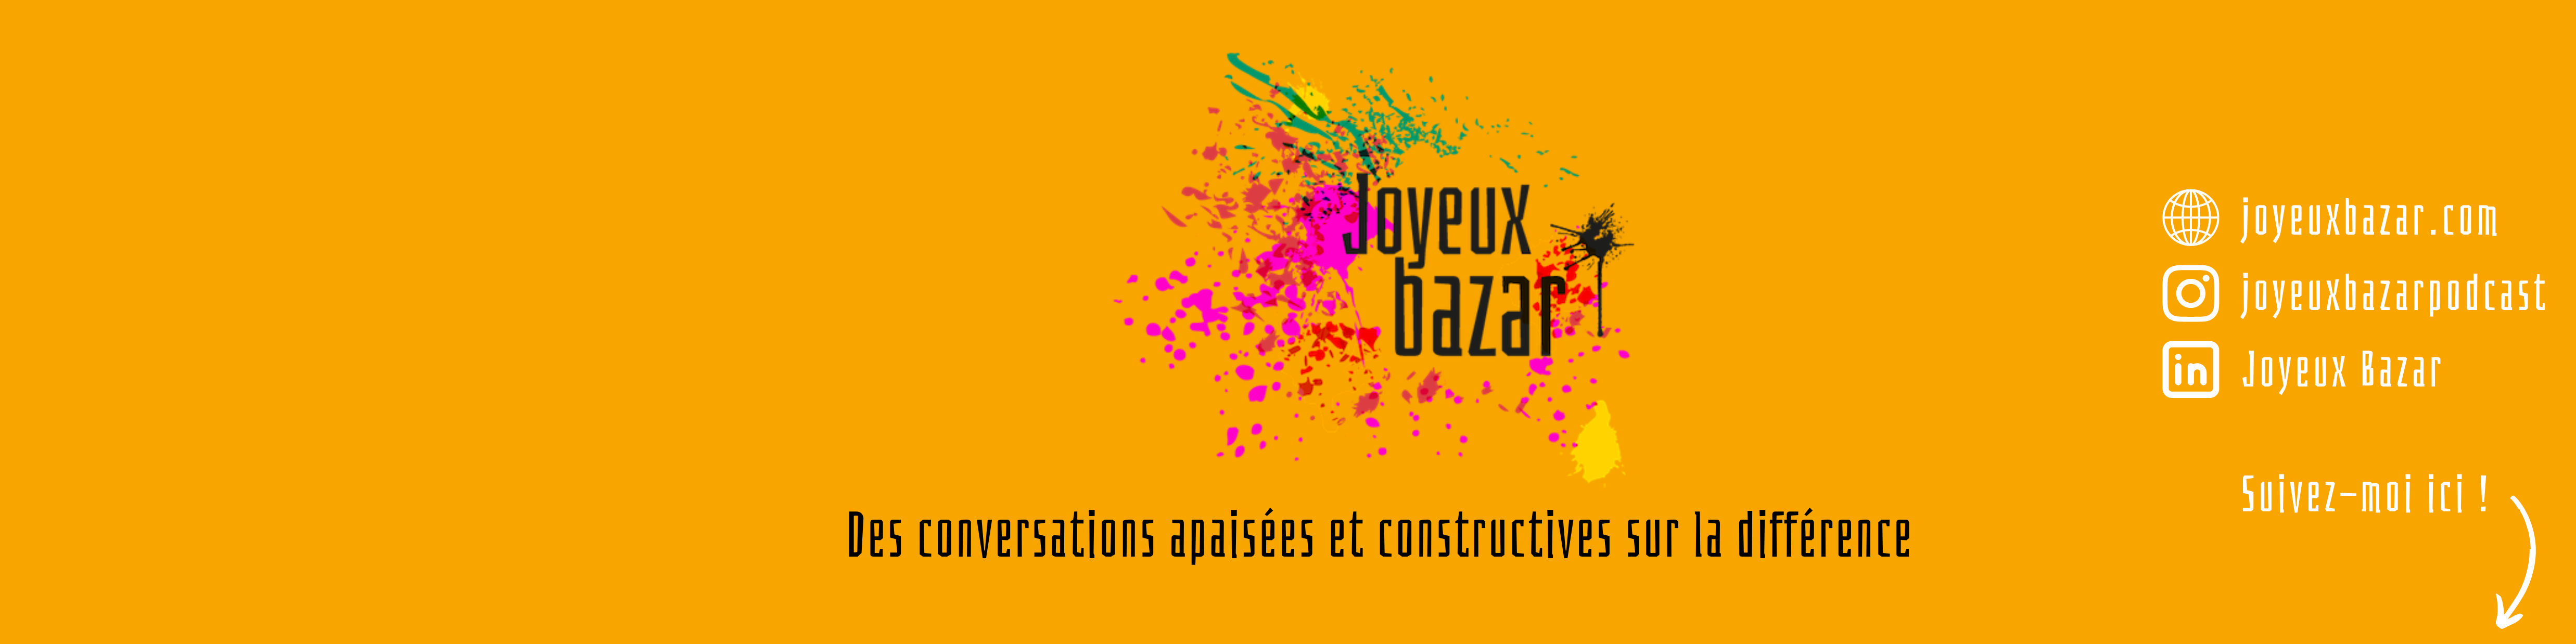 Bannière de JOYEUX BAZAR